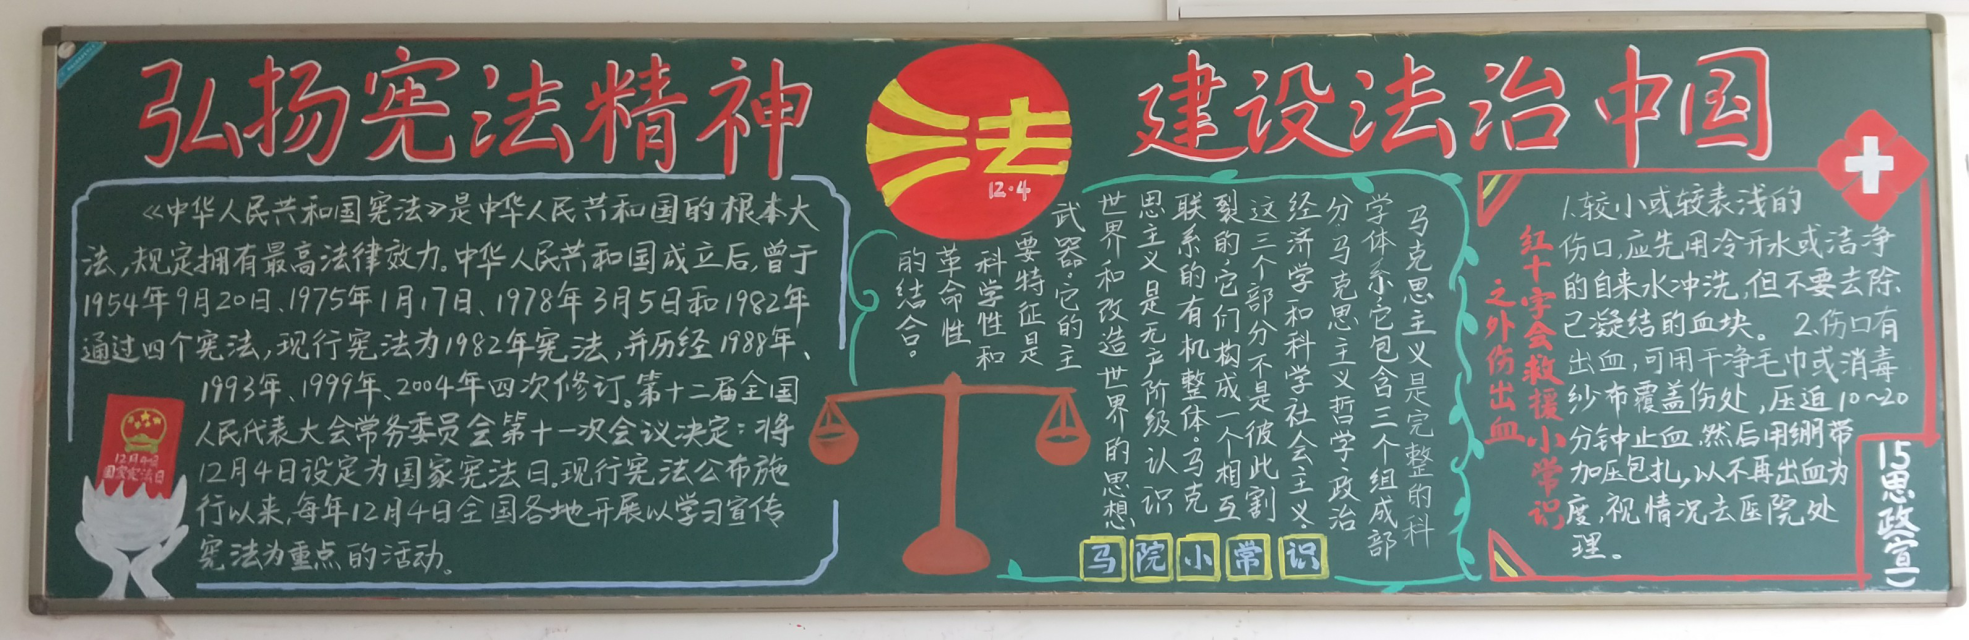 第四期黑板报评比|弘扬宪法精神,建设法制中国